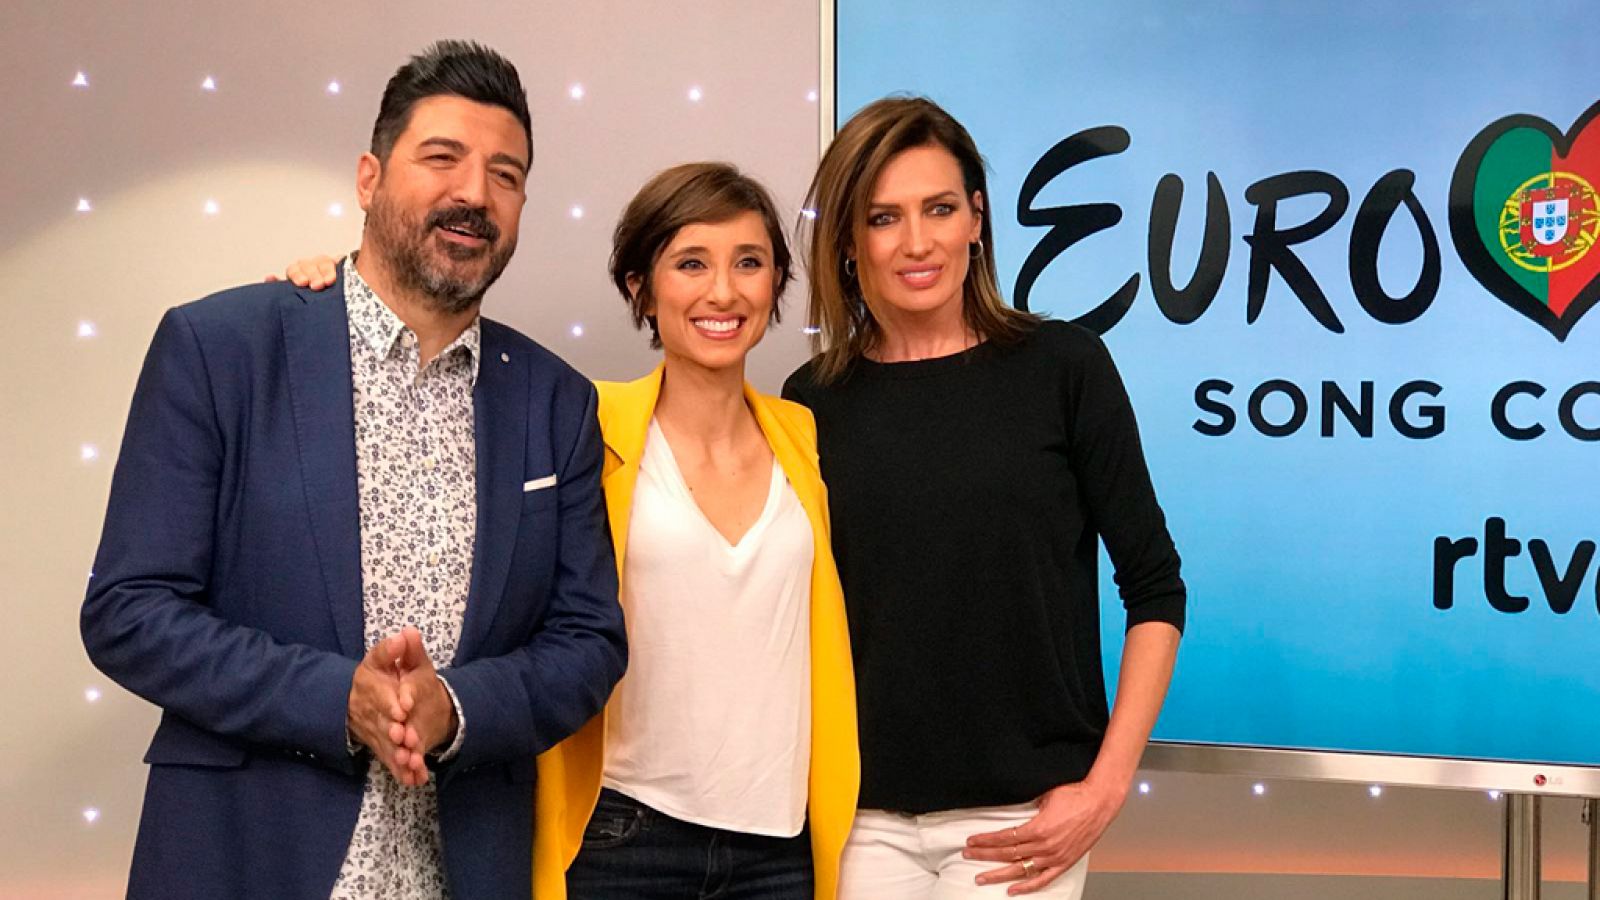 OTVisin - Tony Aguilar, Julia Varela y Nieves lvarez, invitados al sexto programa de OTVisin